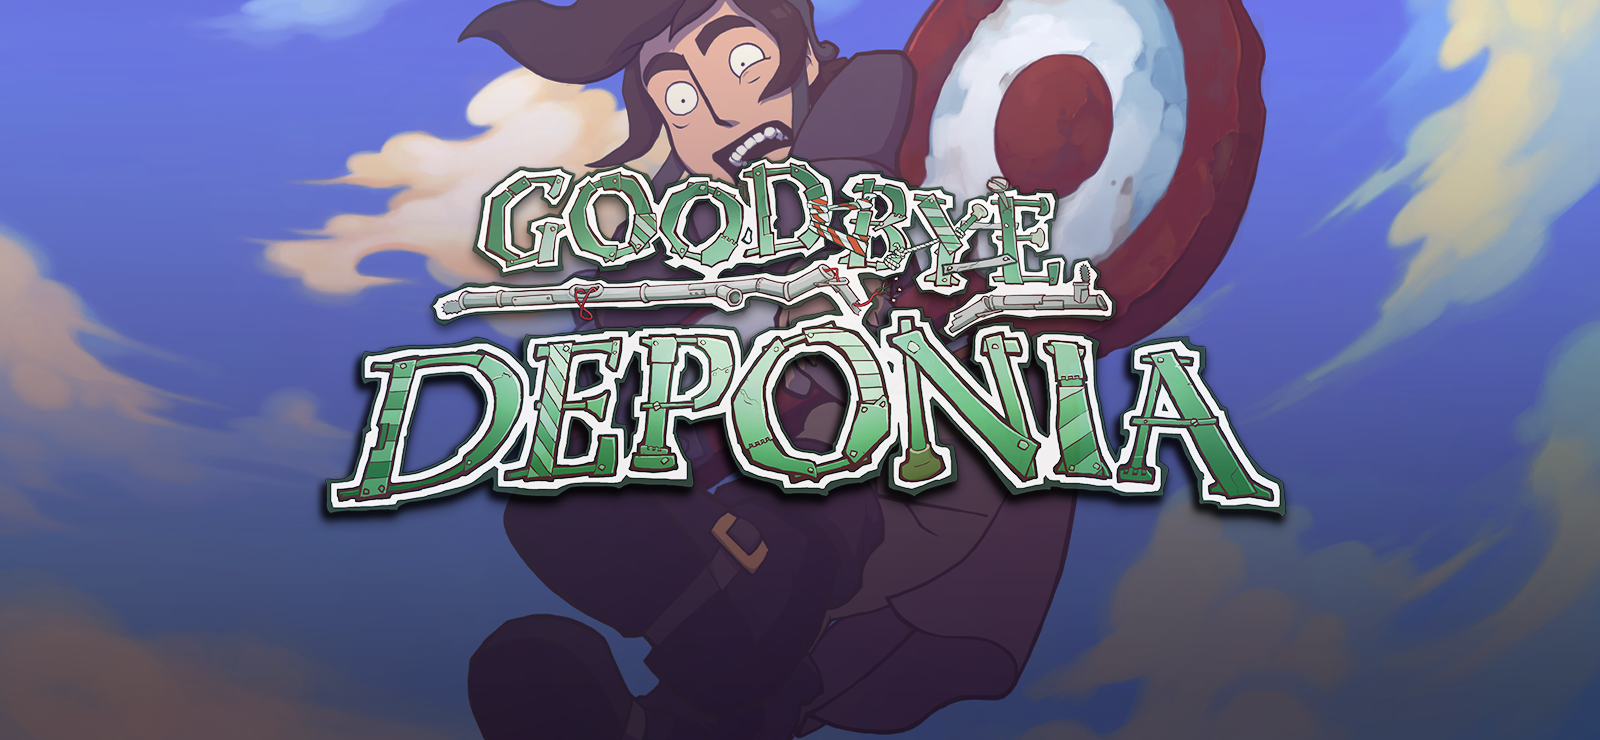 Deponia 3: Goodbye Deponia